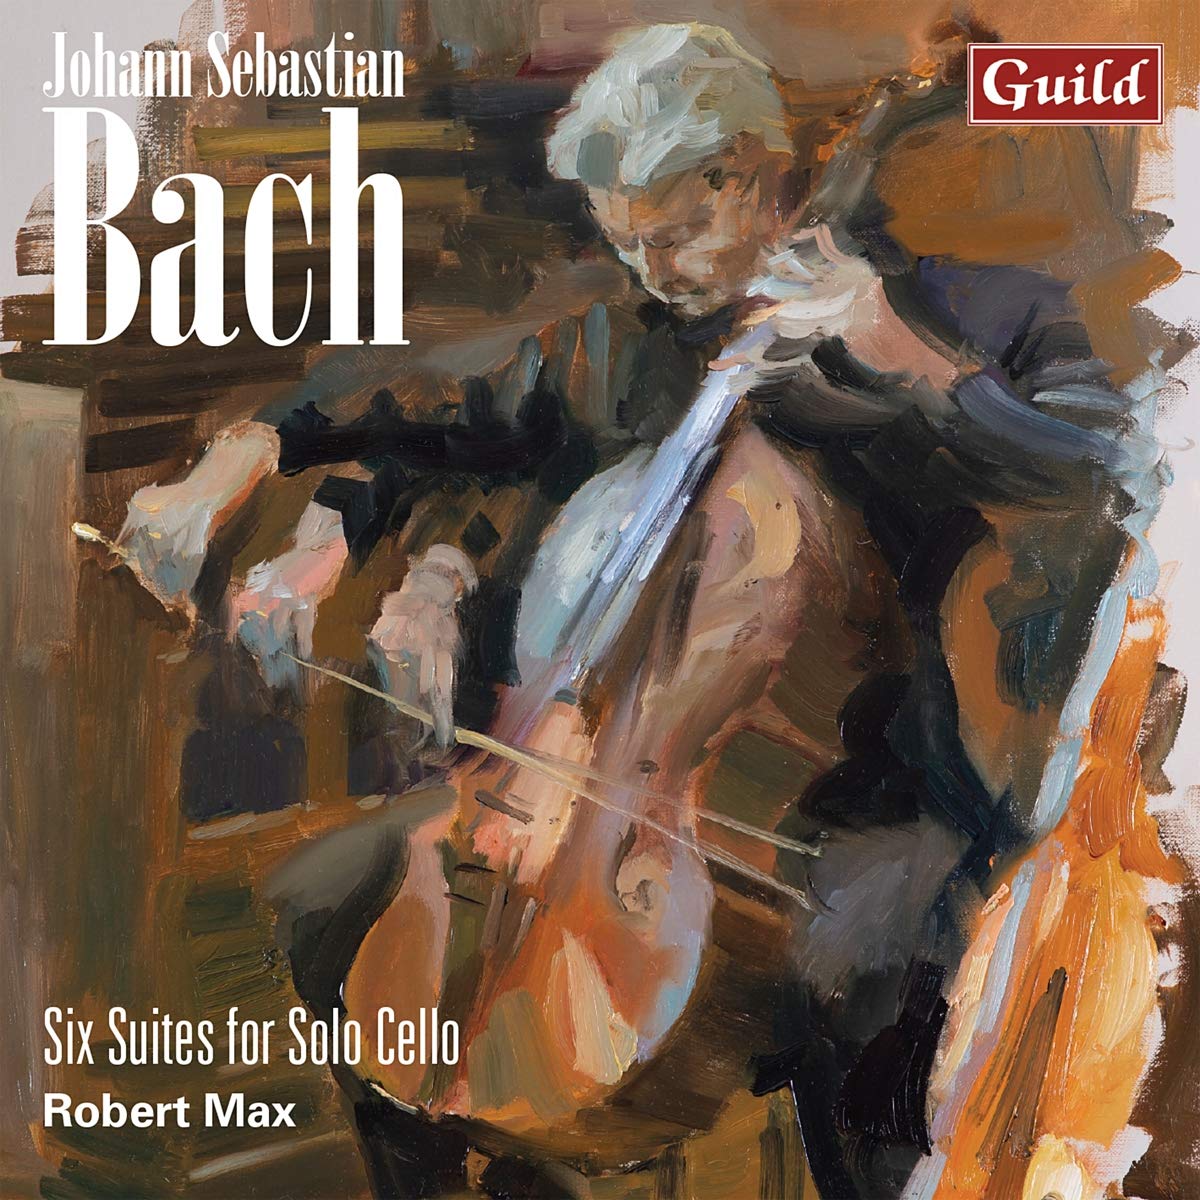 Audio Cd Johann Sebastian Bach - 6 Suites For Solo Cello (2 Cd) NUOVO SIGILLATO, EDIZIONE DEL 04/09/2020 SUBITO DISPONIBILE